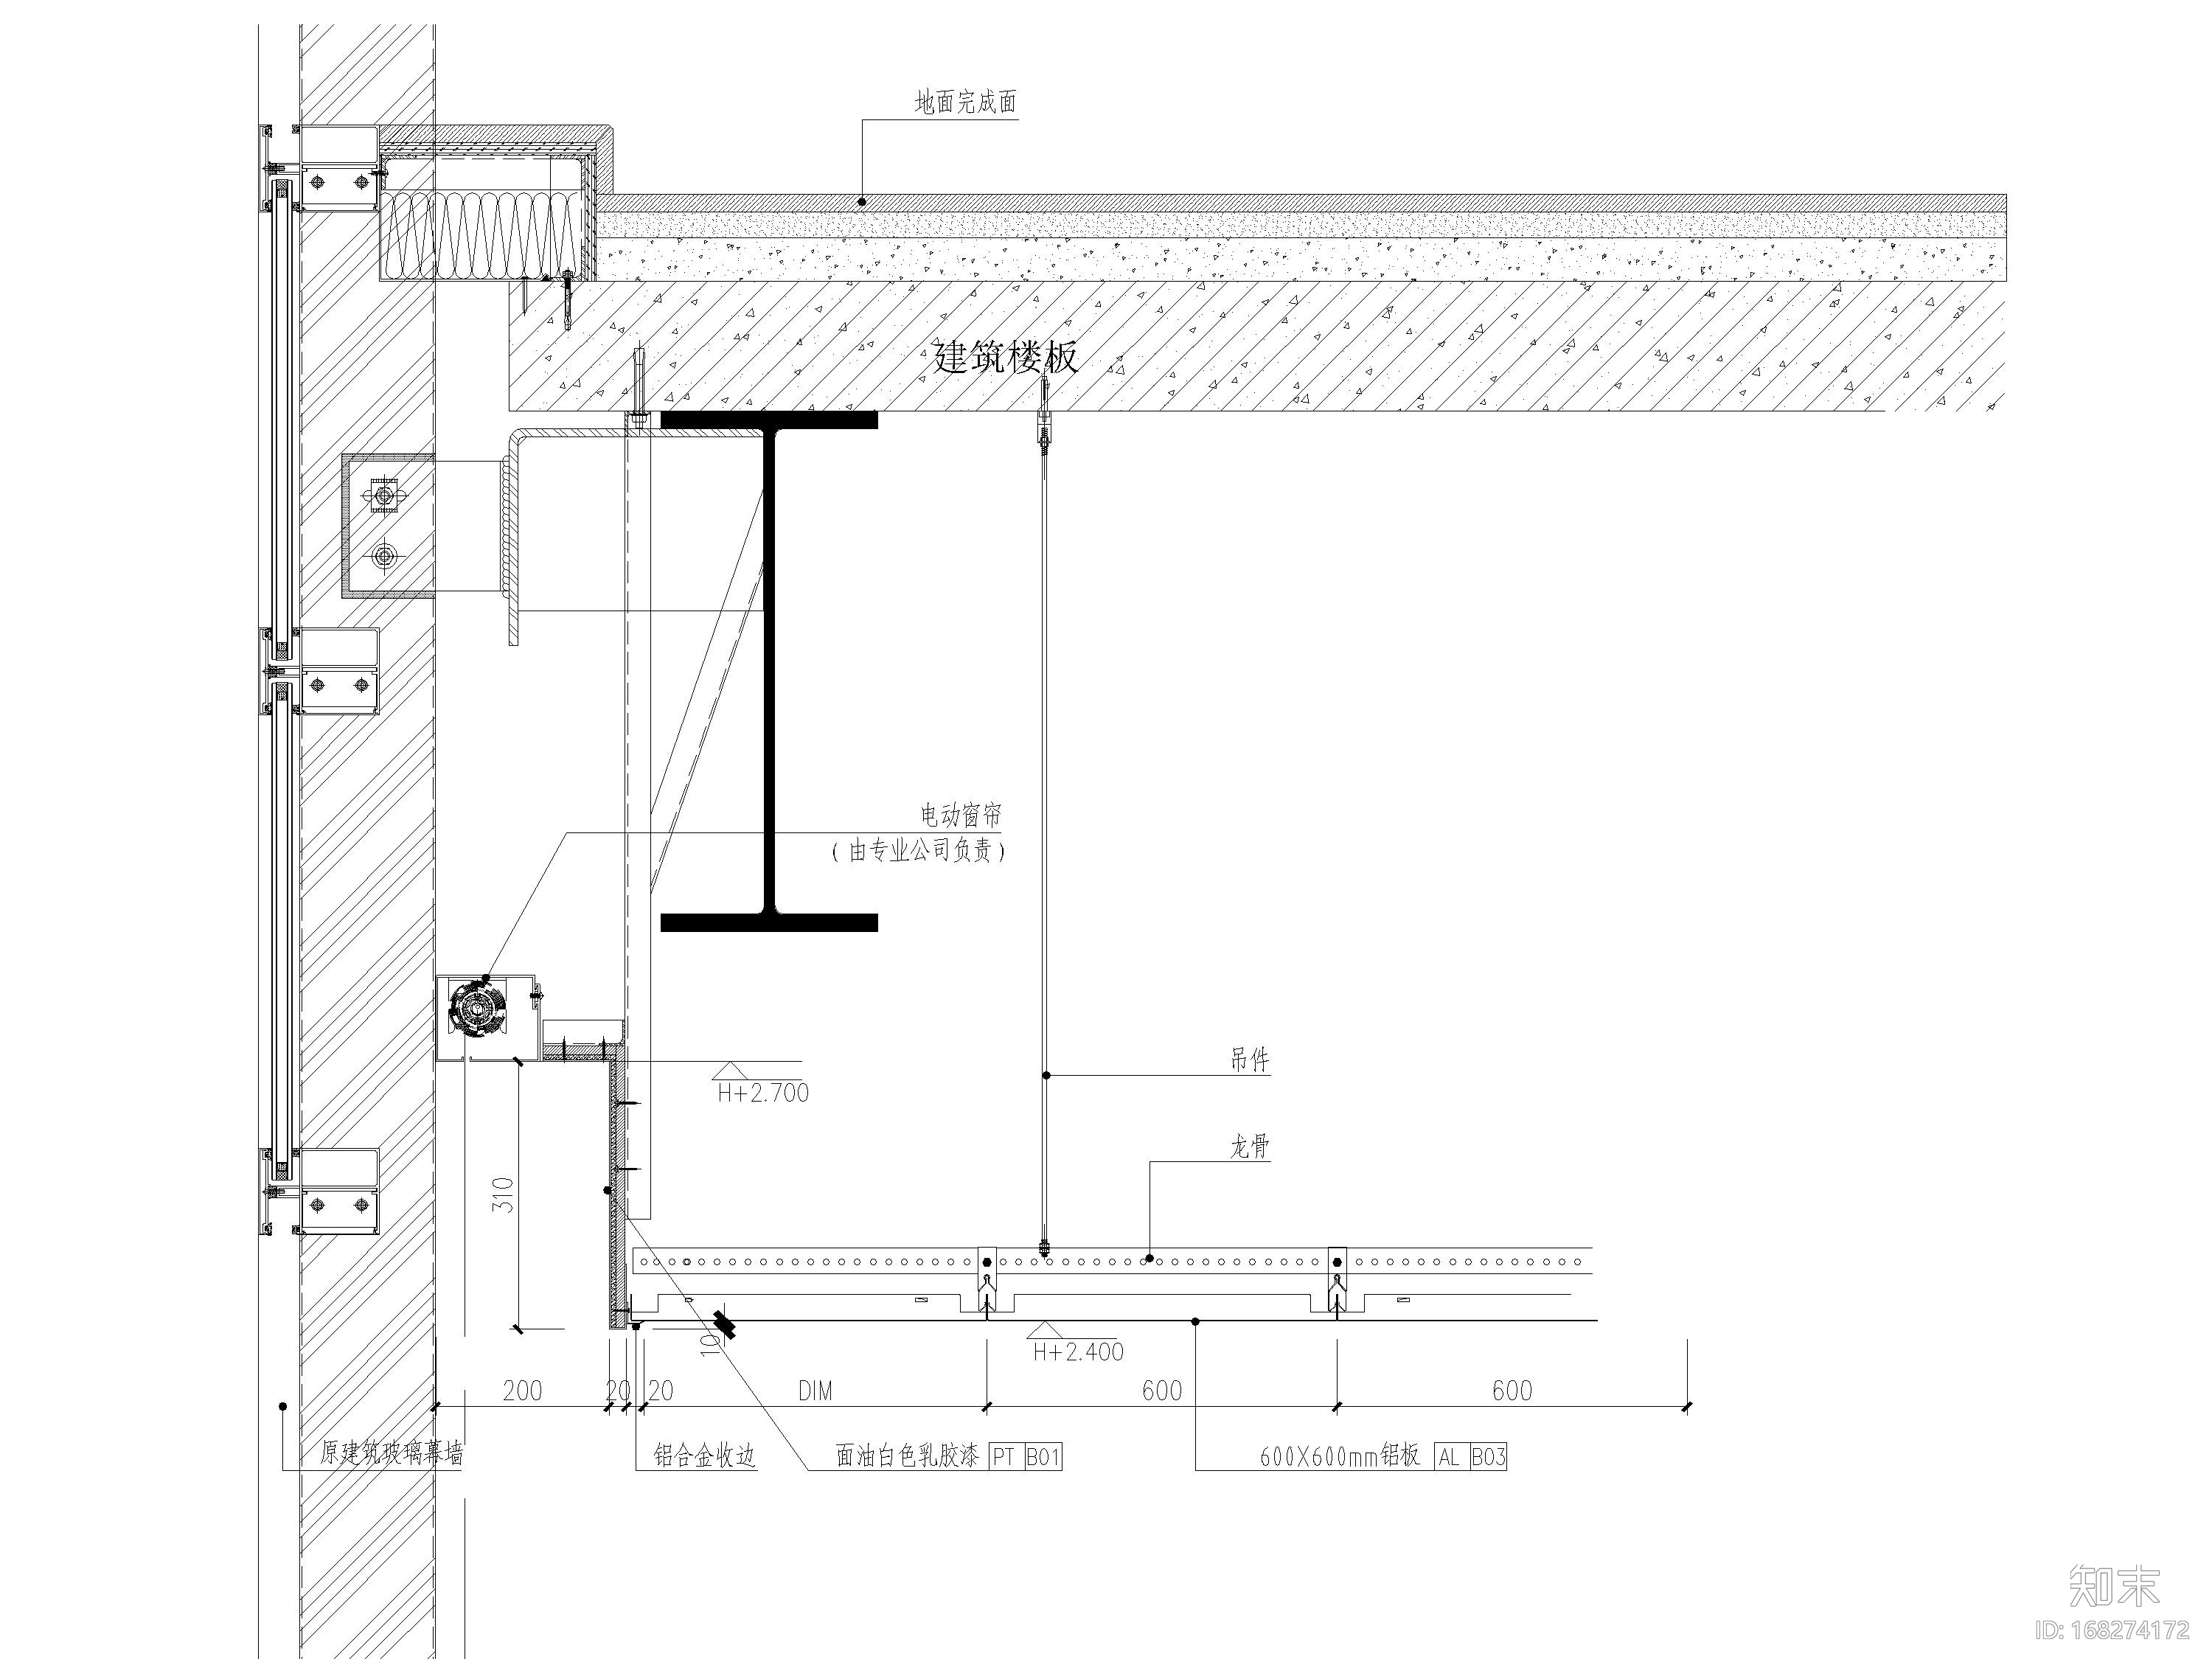 石膏板钢板铝板铝格栅天花吊顶节点图施工图下载